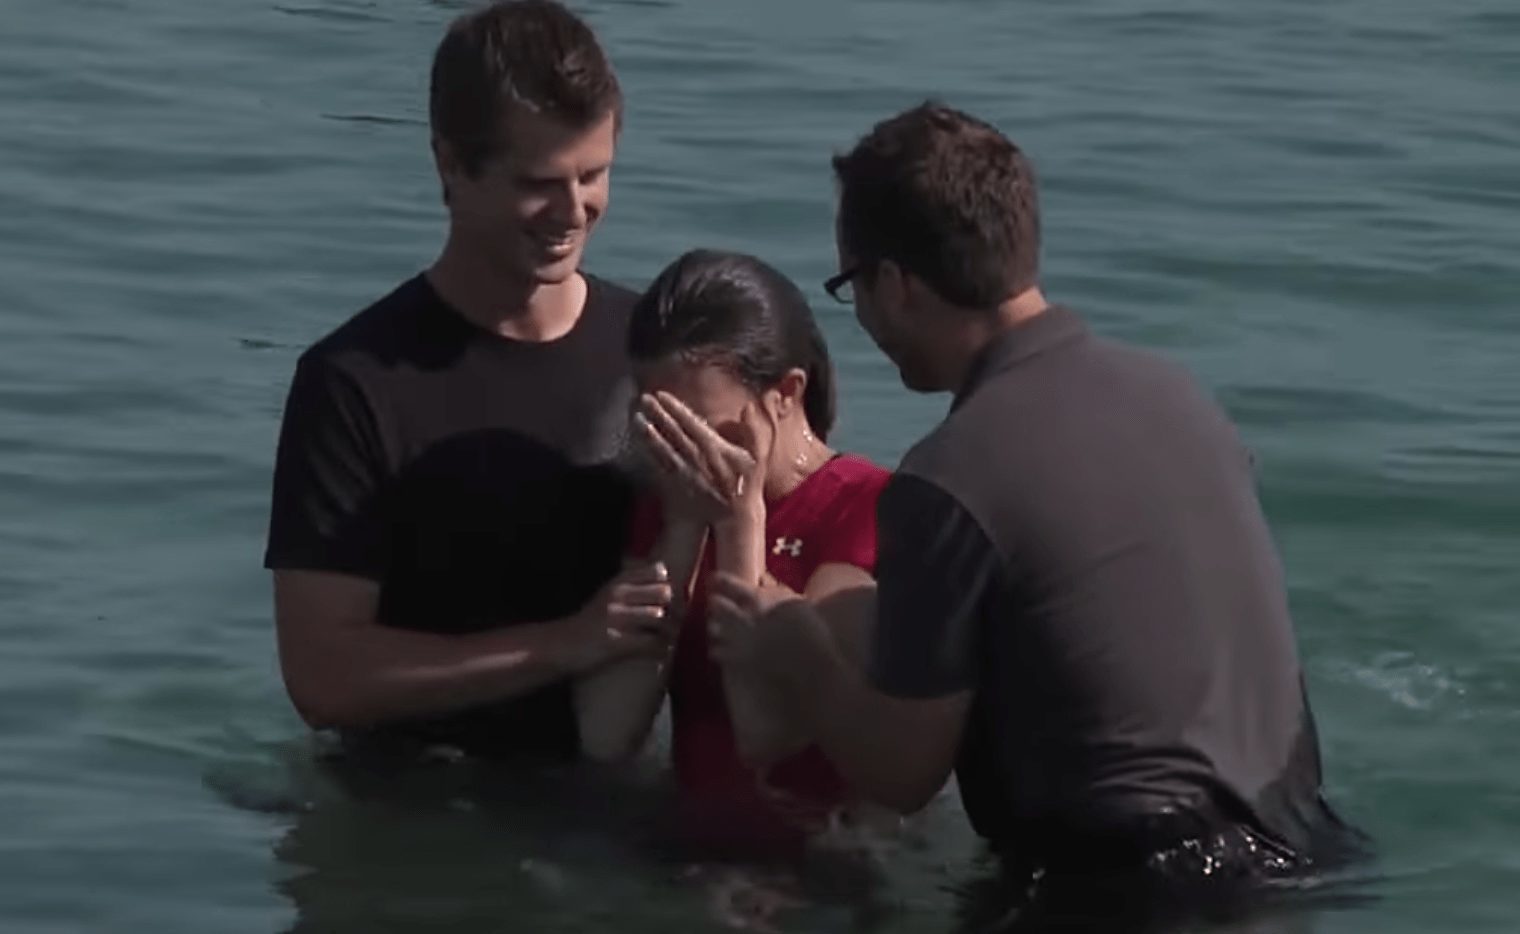 Deux personnes baptisent une femme dans un lac.